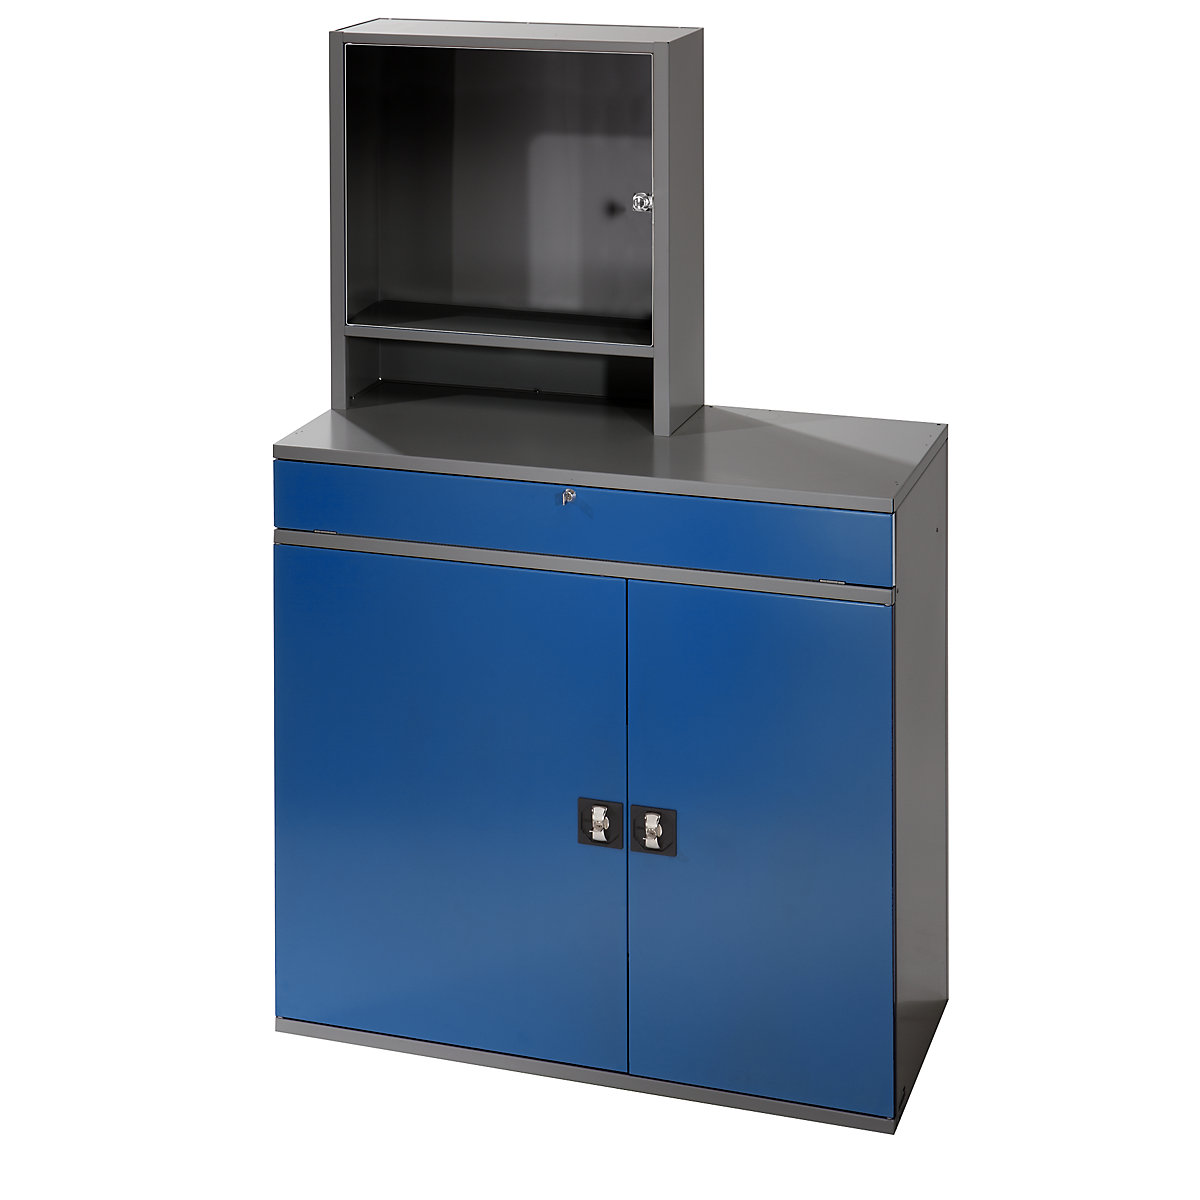 RAU – Estação de trabalho para computadores, caixa para monitor, 1 prateleira extraível, 2 gavetas, largura 1100 mm, antracite / azul genciana